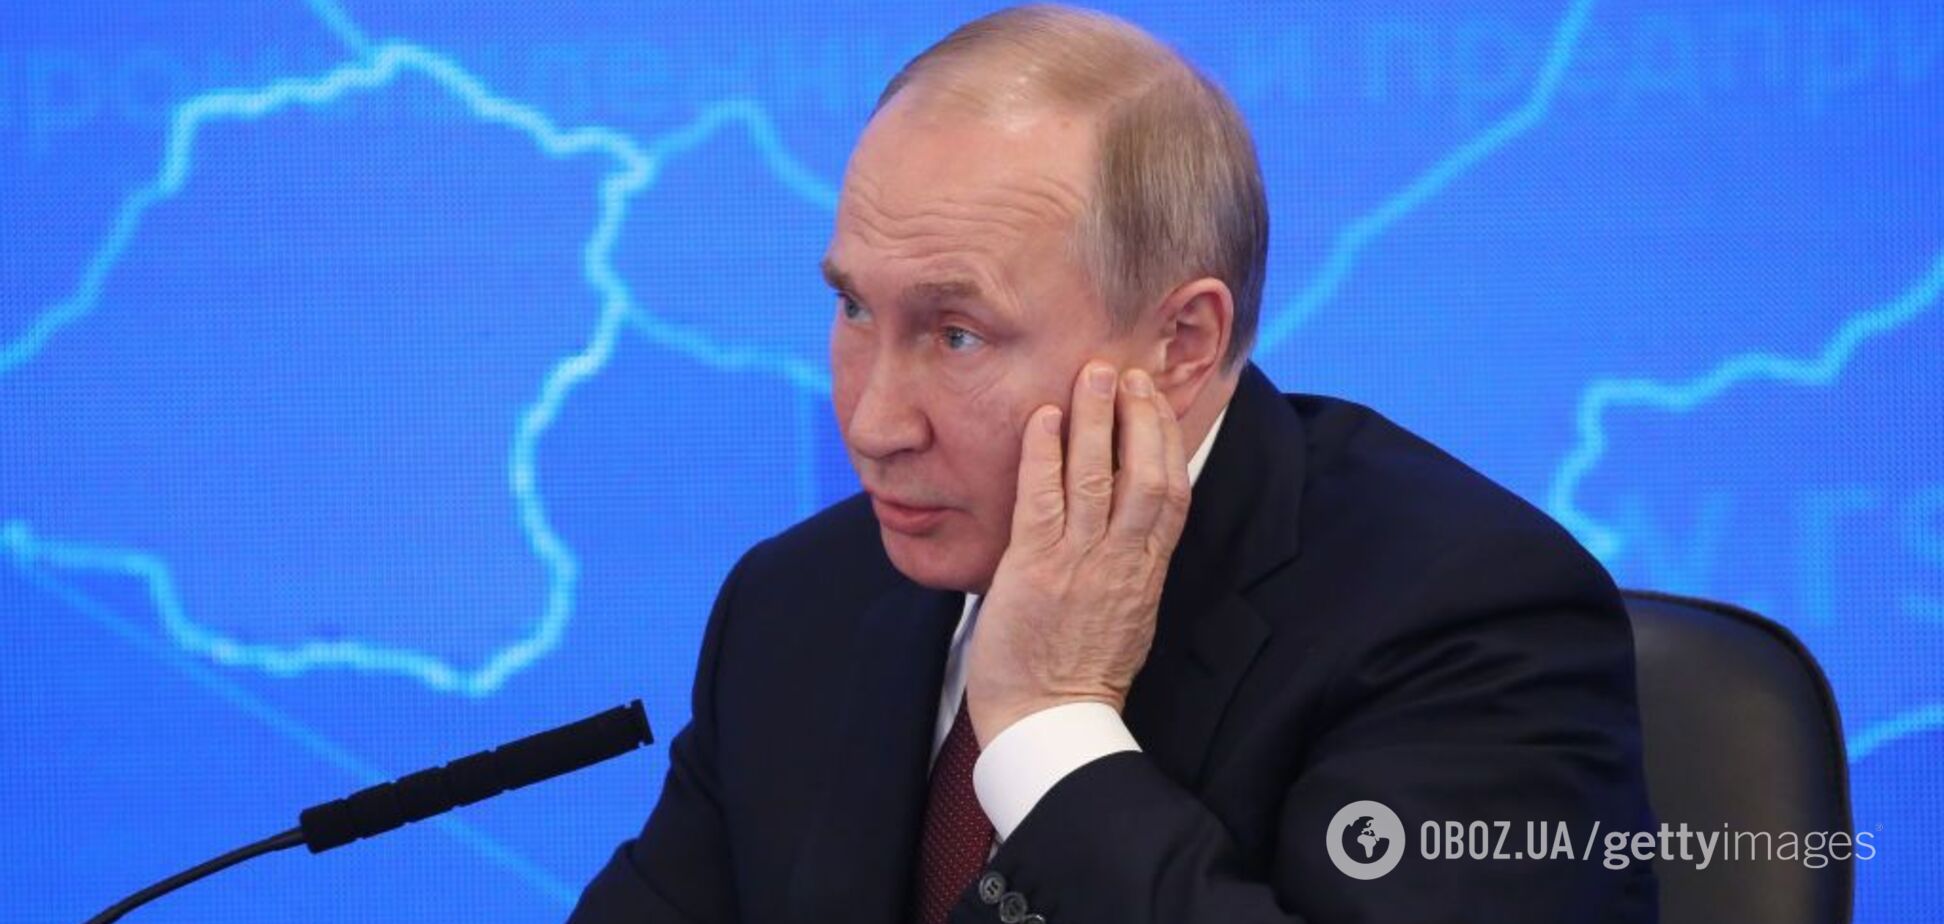 'Усе перевіримо': в Кремлі вперше прокоментували падаючий рейтинг Путіна